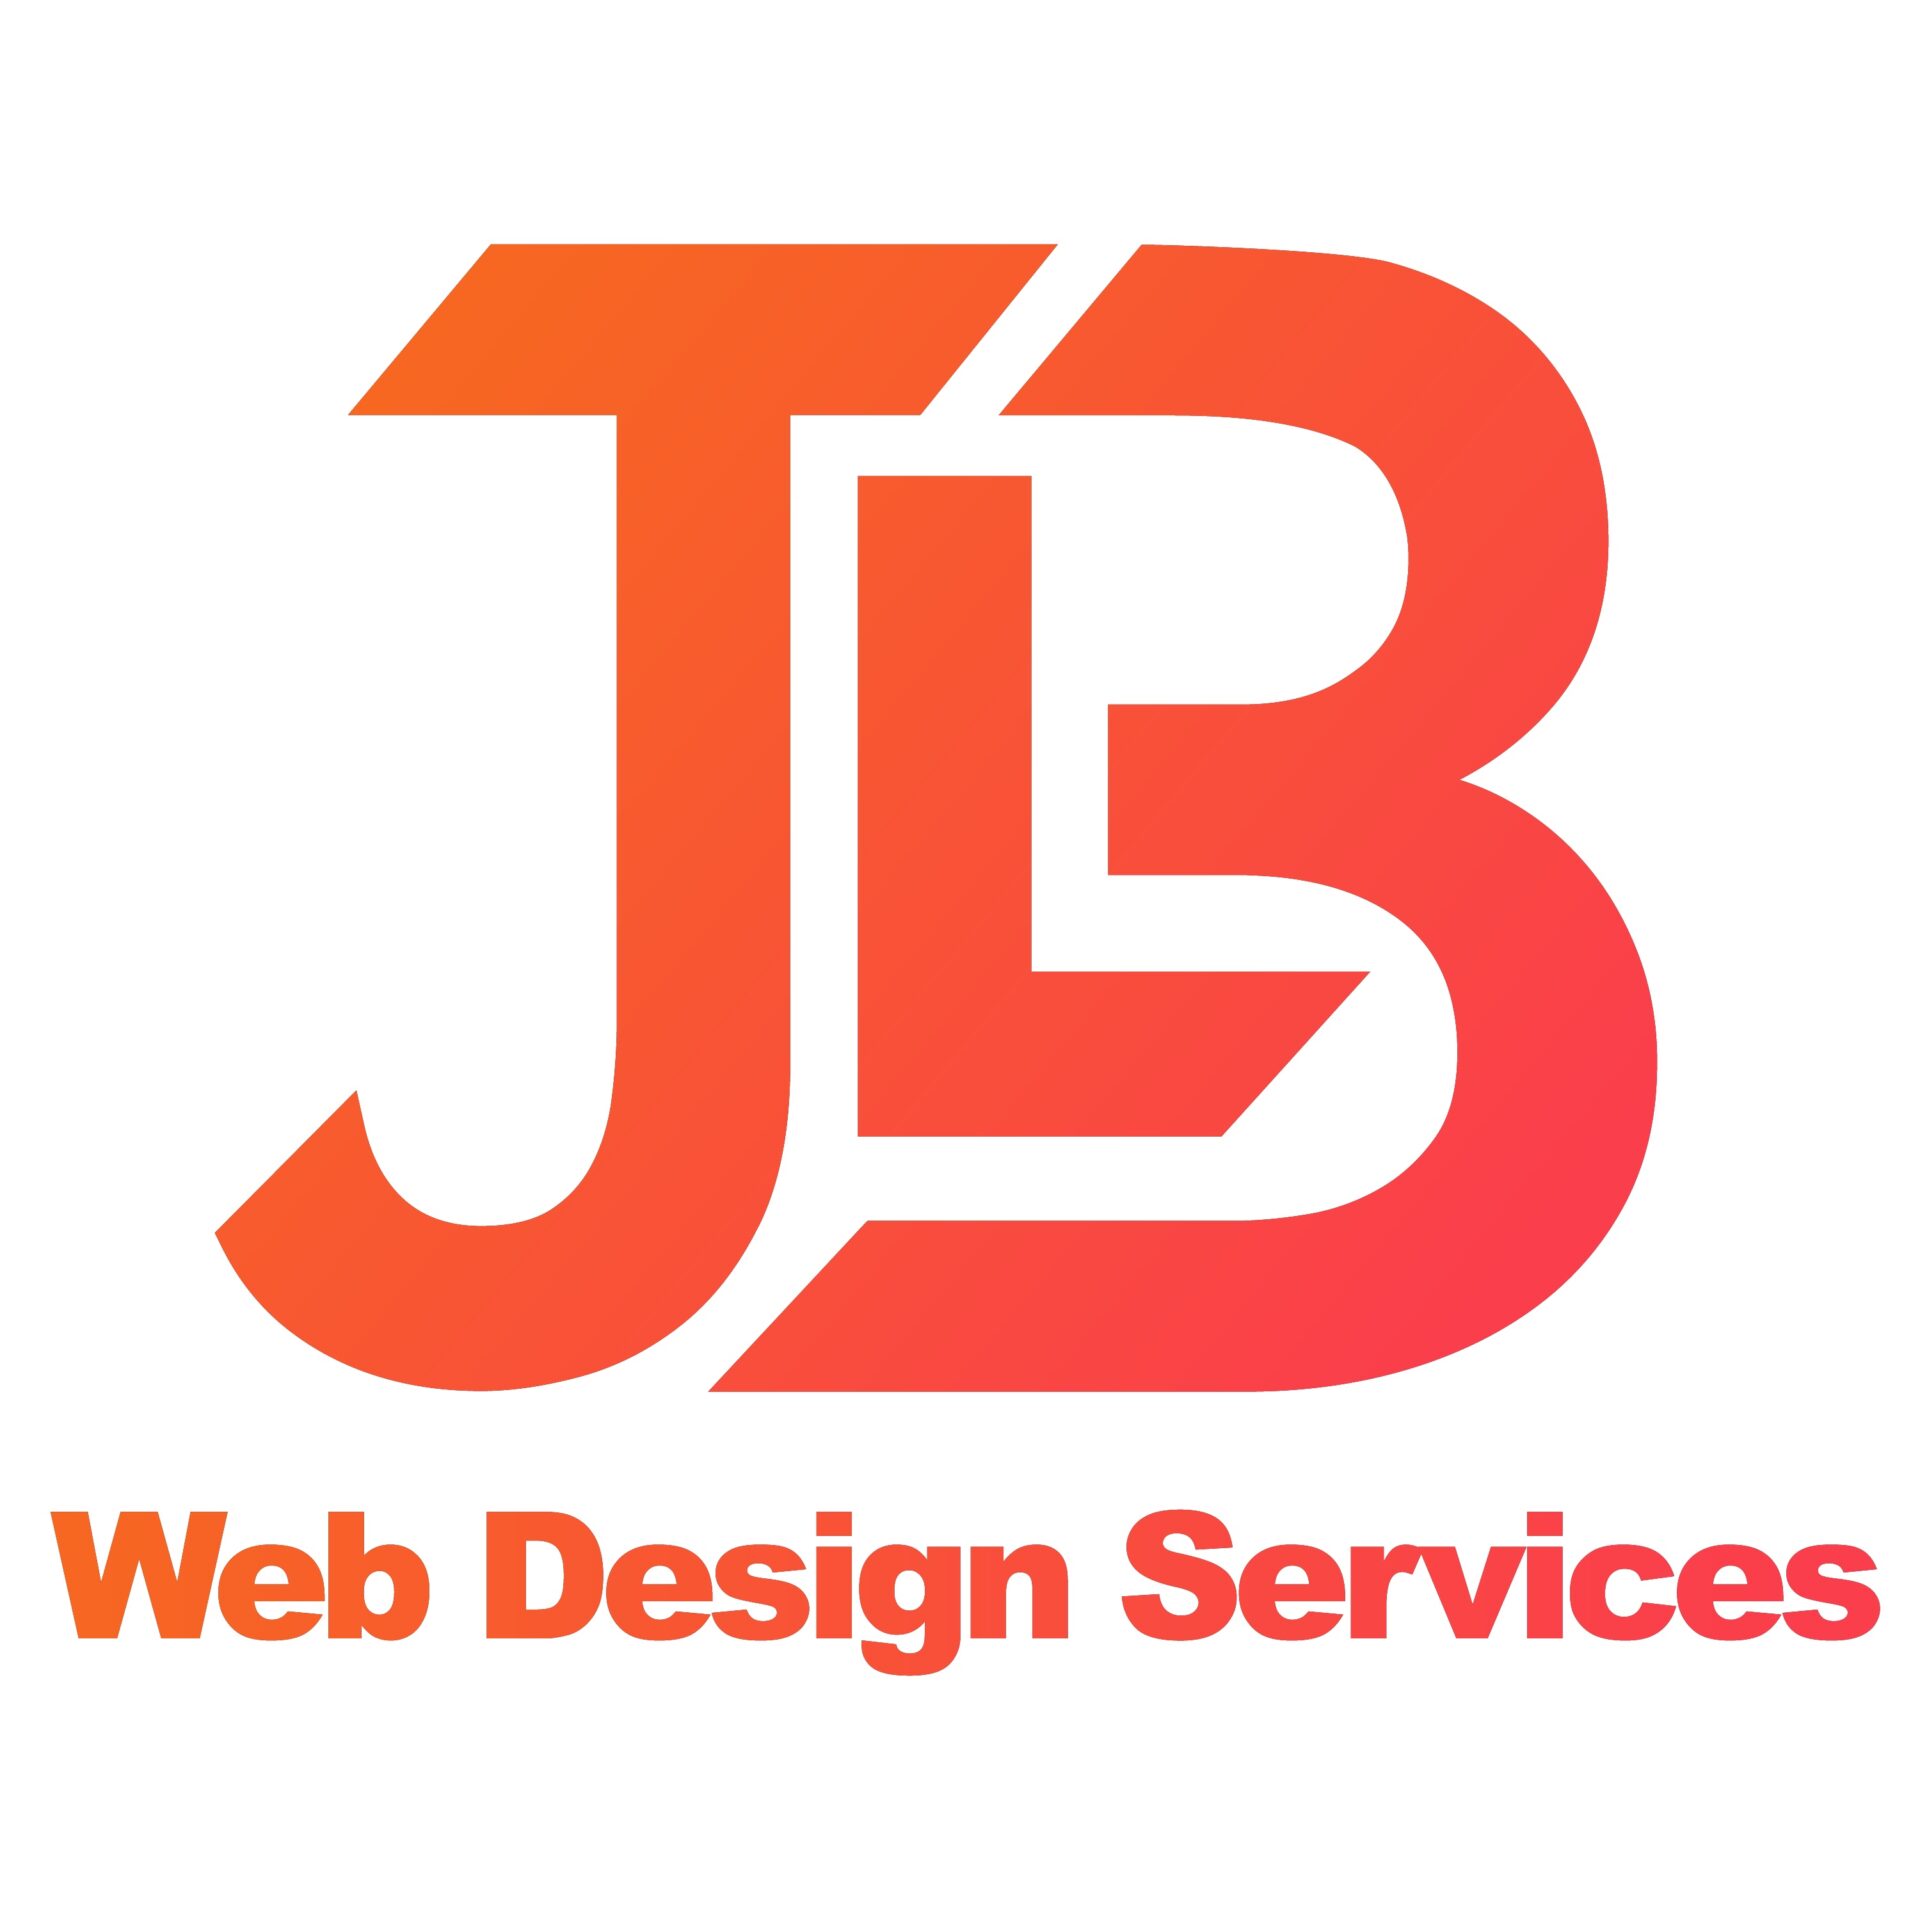 JLB Web Design Services Nashville, TN, Franklin, Brentwood web design and digital marketing company.